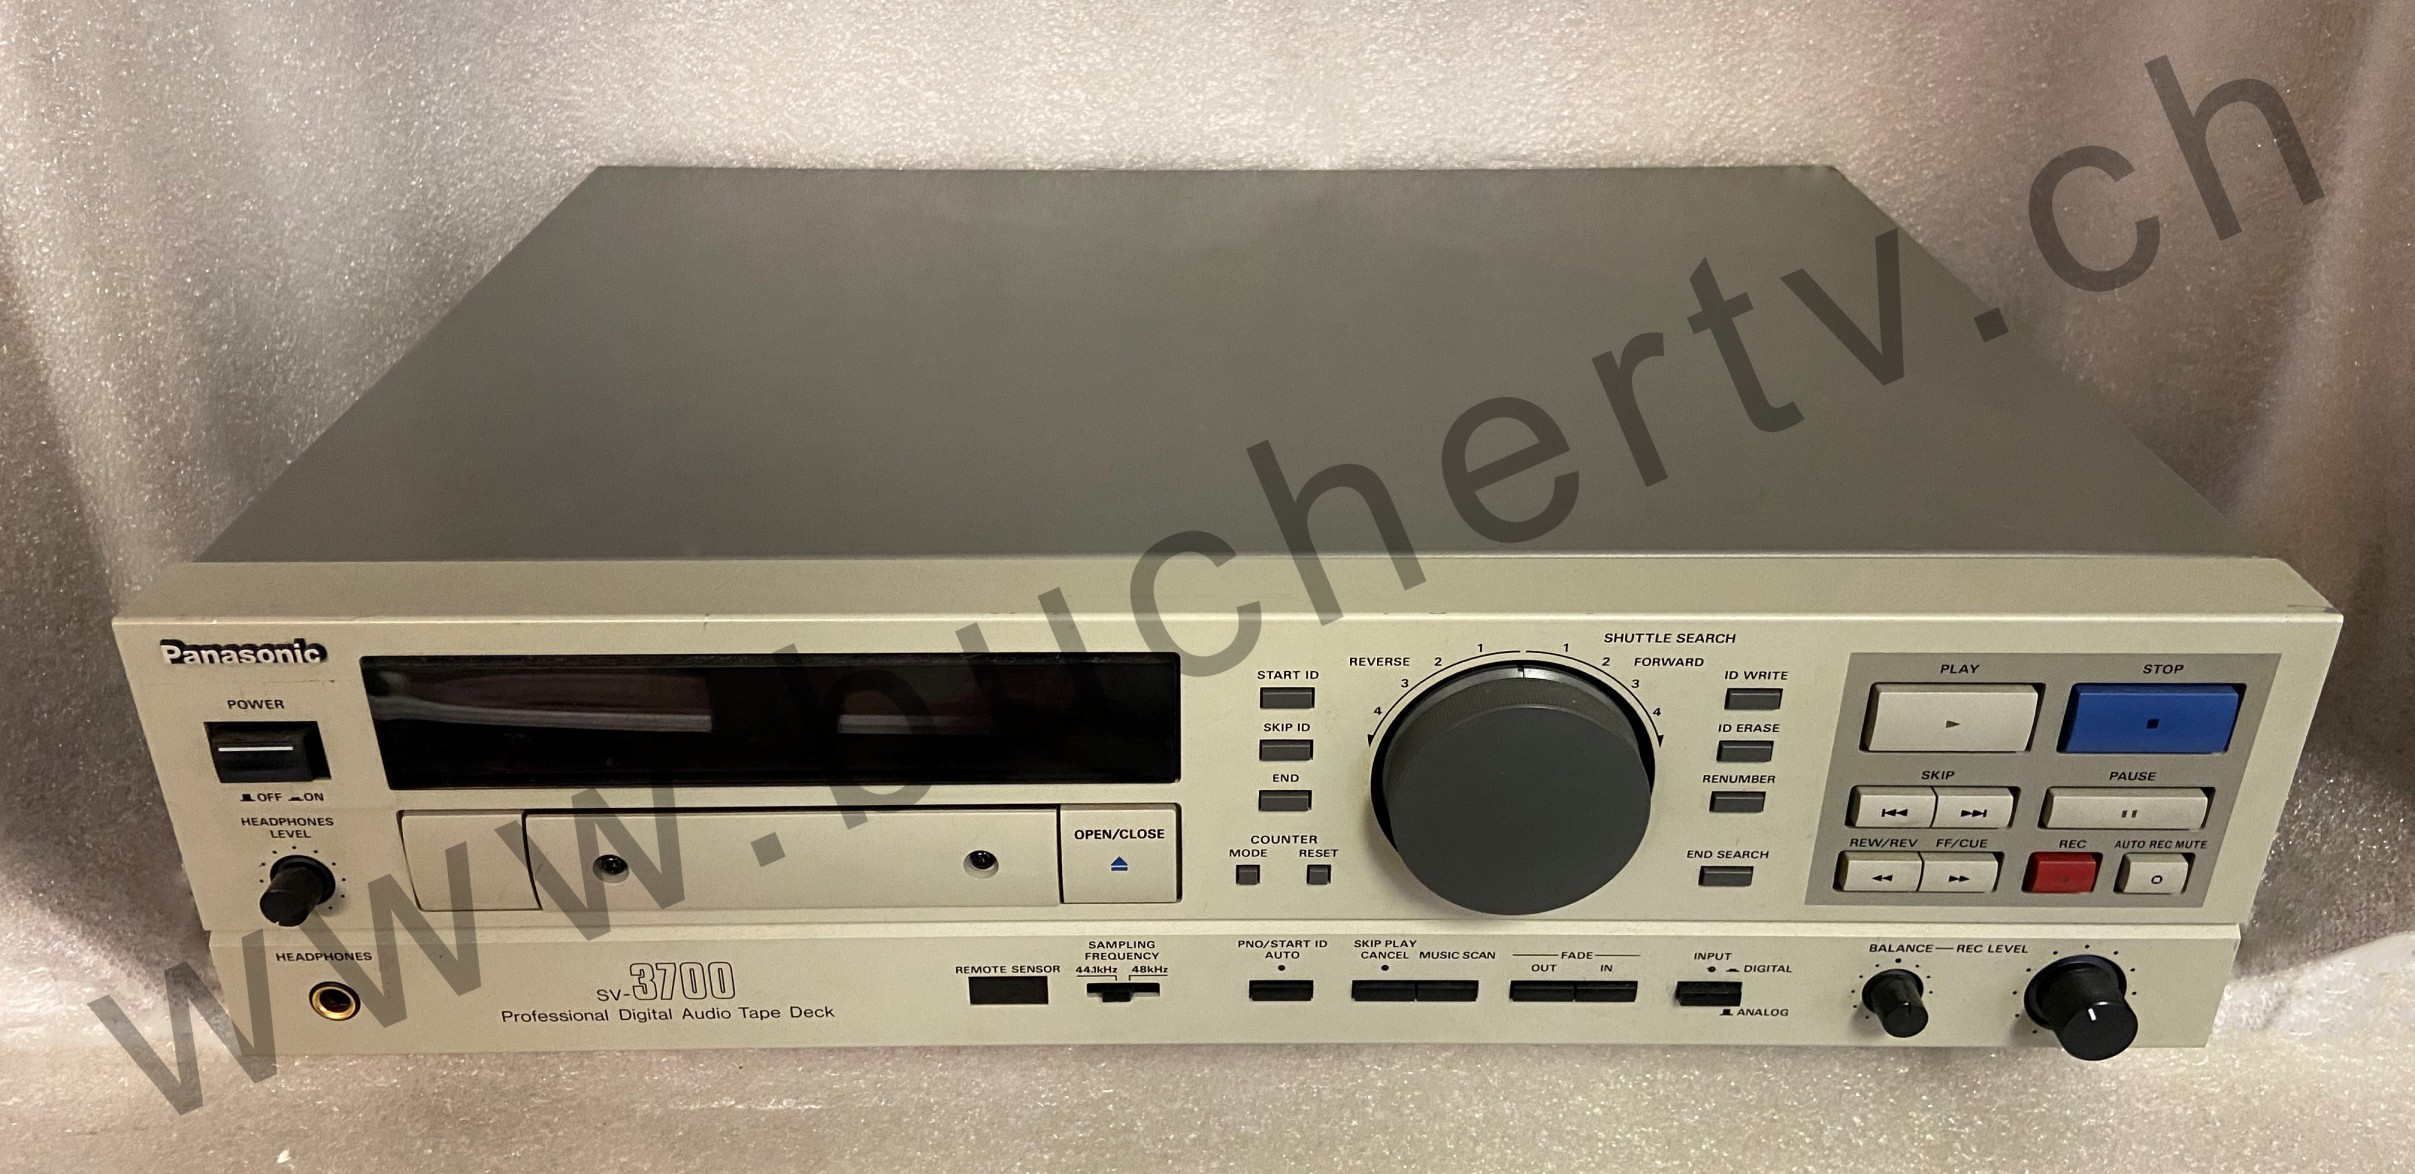 Panasonic SV-3700 Professional Digital Audio Tape Deck Reparatur